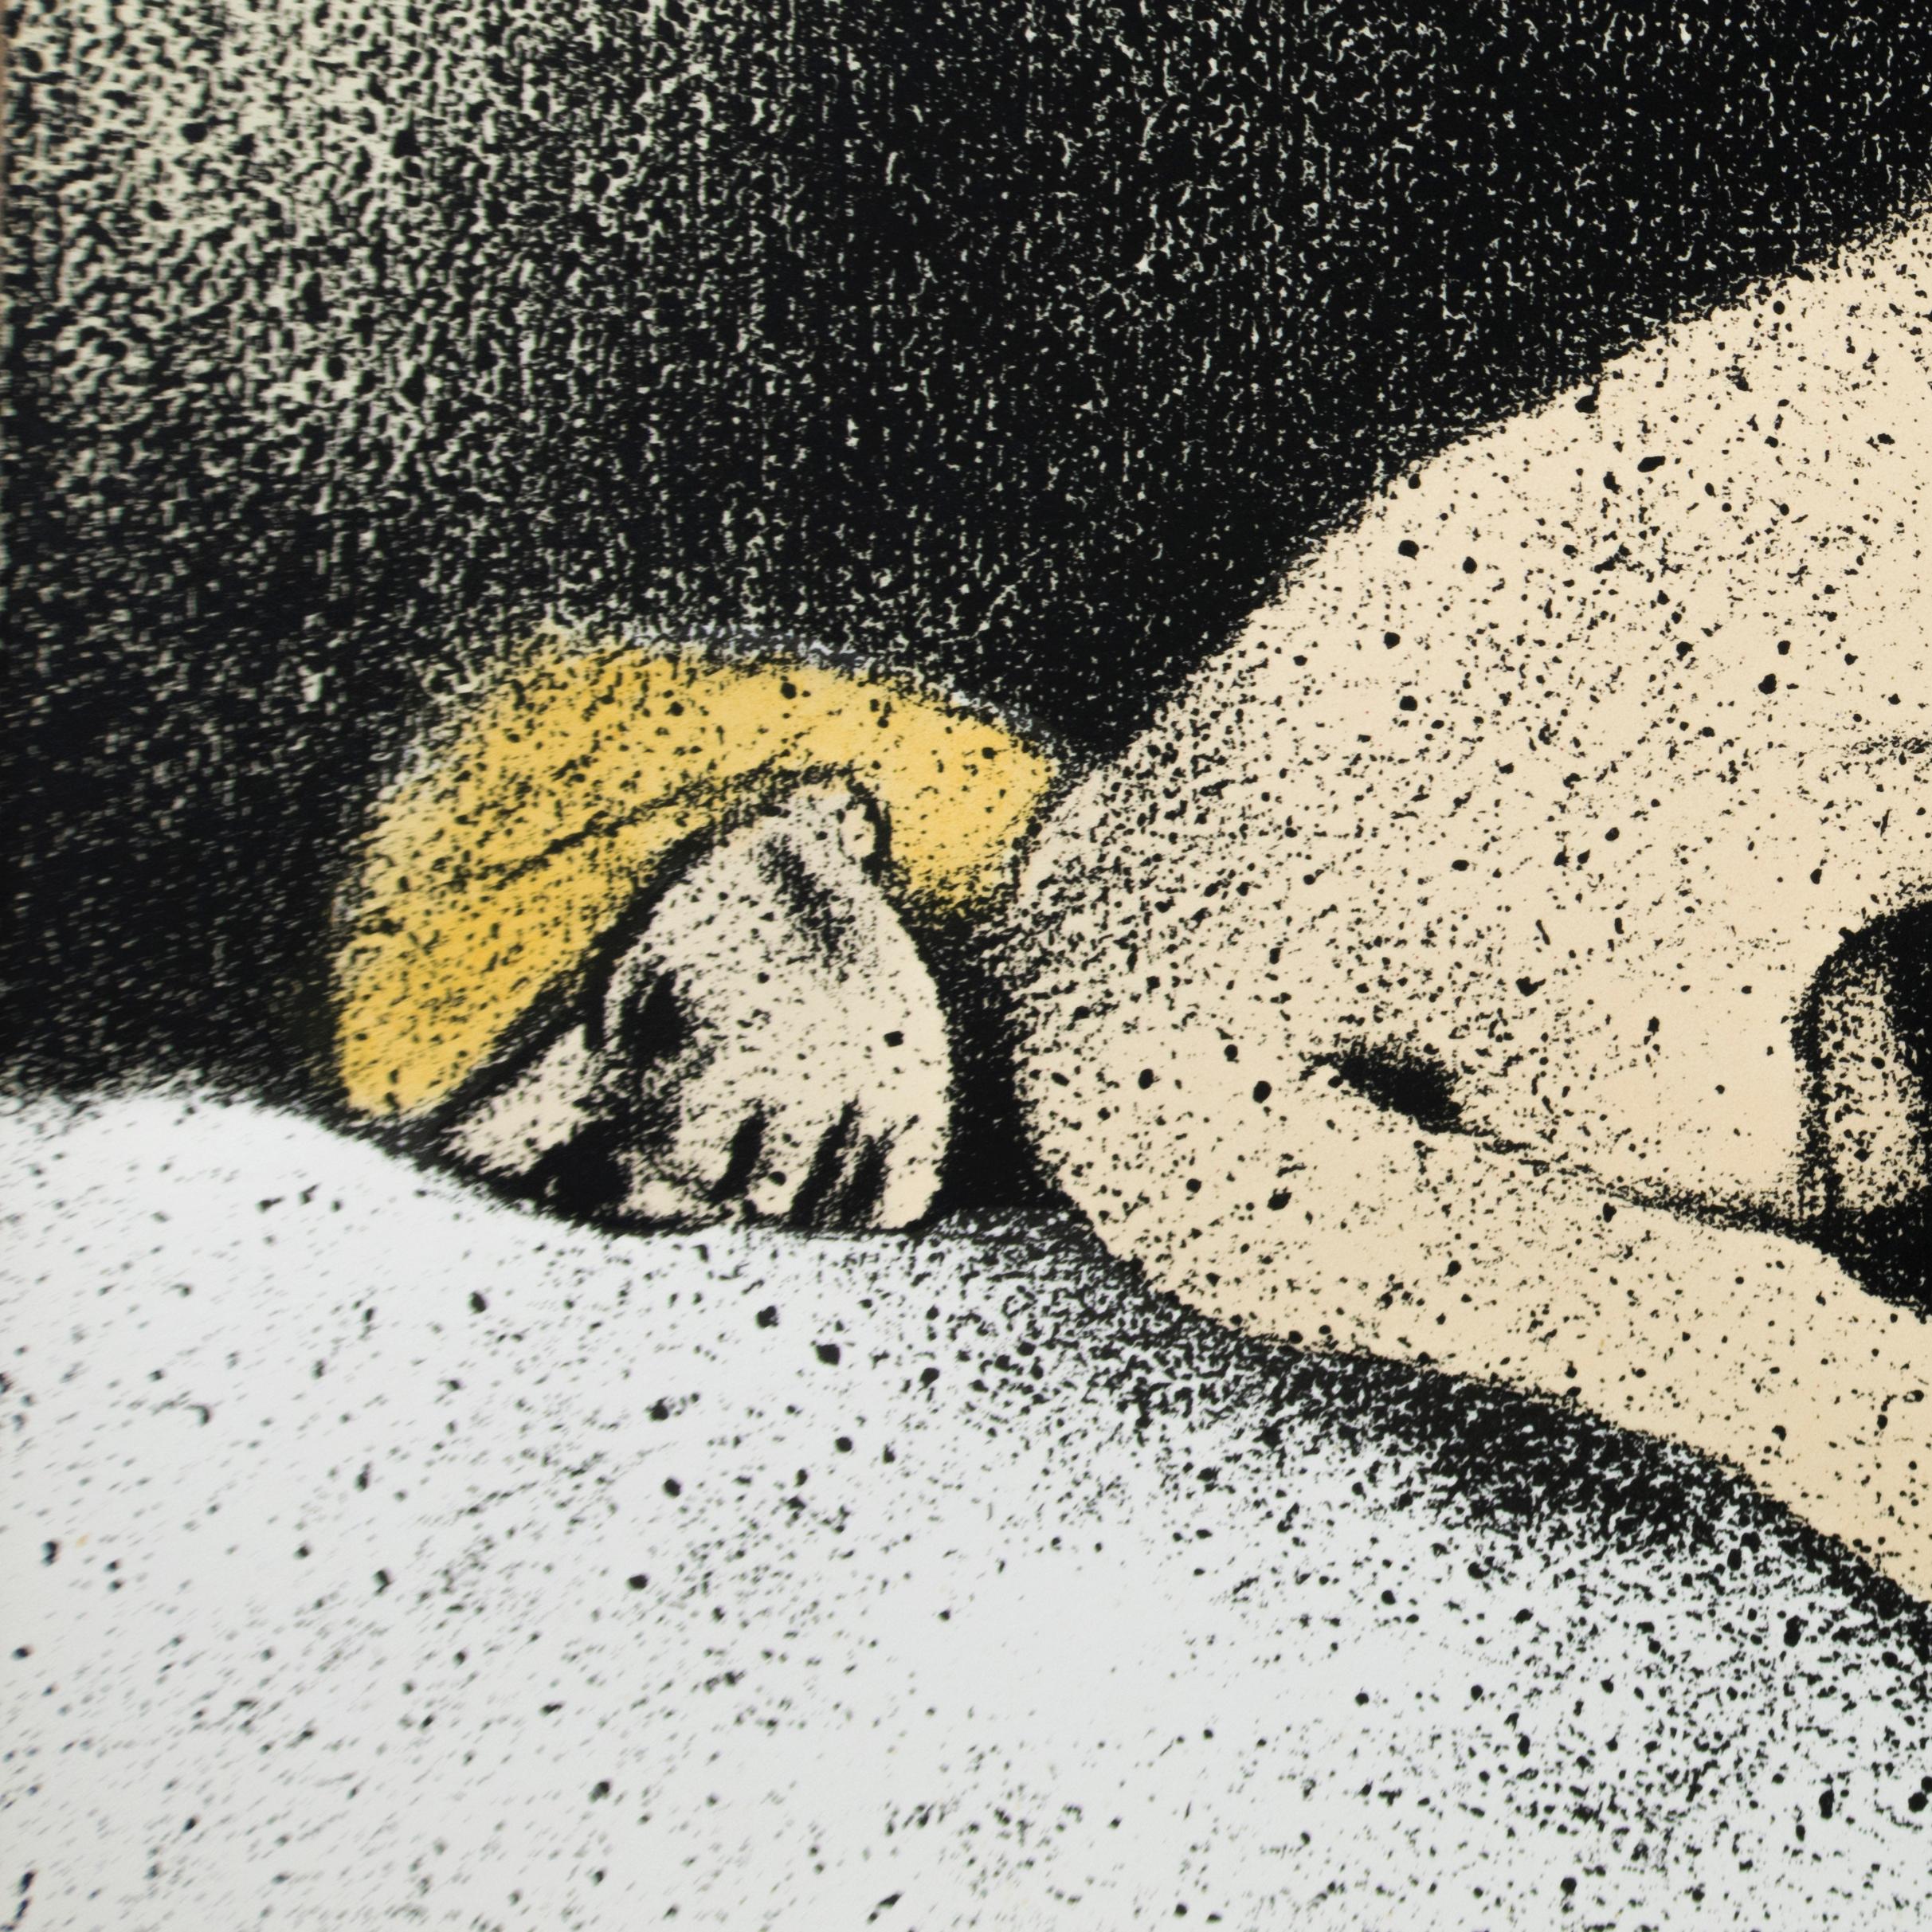 Eine erotische Tändelei zwischen einer nackten blonden Frau im Liegen und einem nackten Mann auf einem Bett mit weißen Laken. Subtile Schattierungen von Pfirsich, Hellbraun, Gelb und Grau sowie schwarze Schatten hinter dem Paar. Die elegante